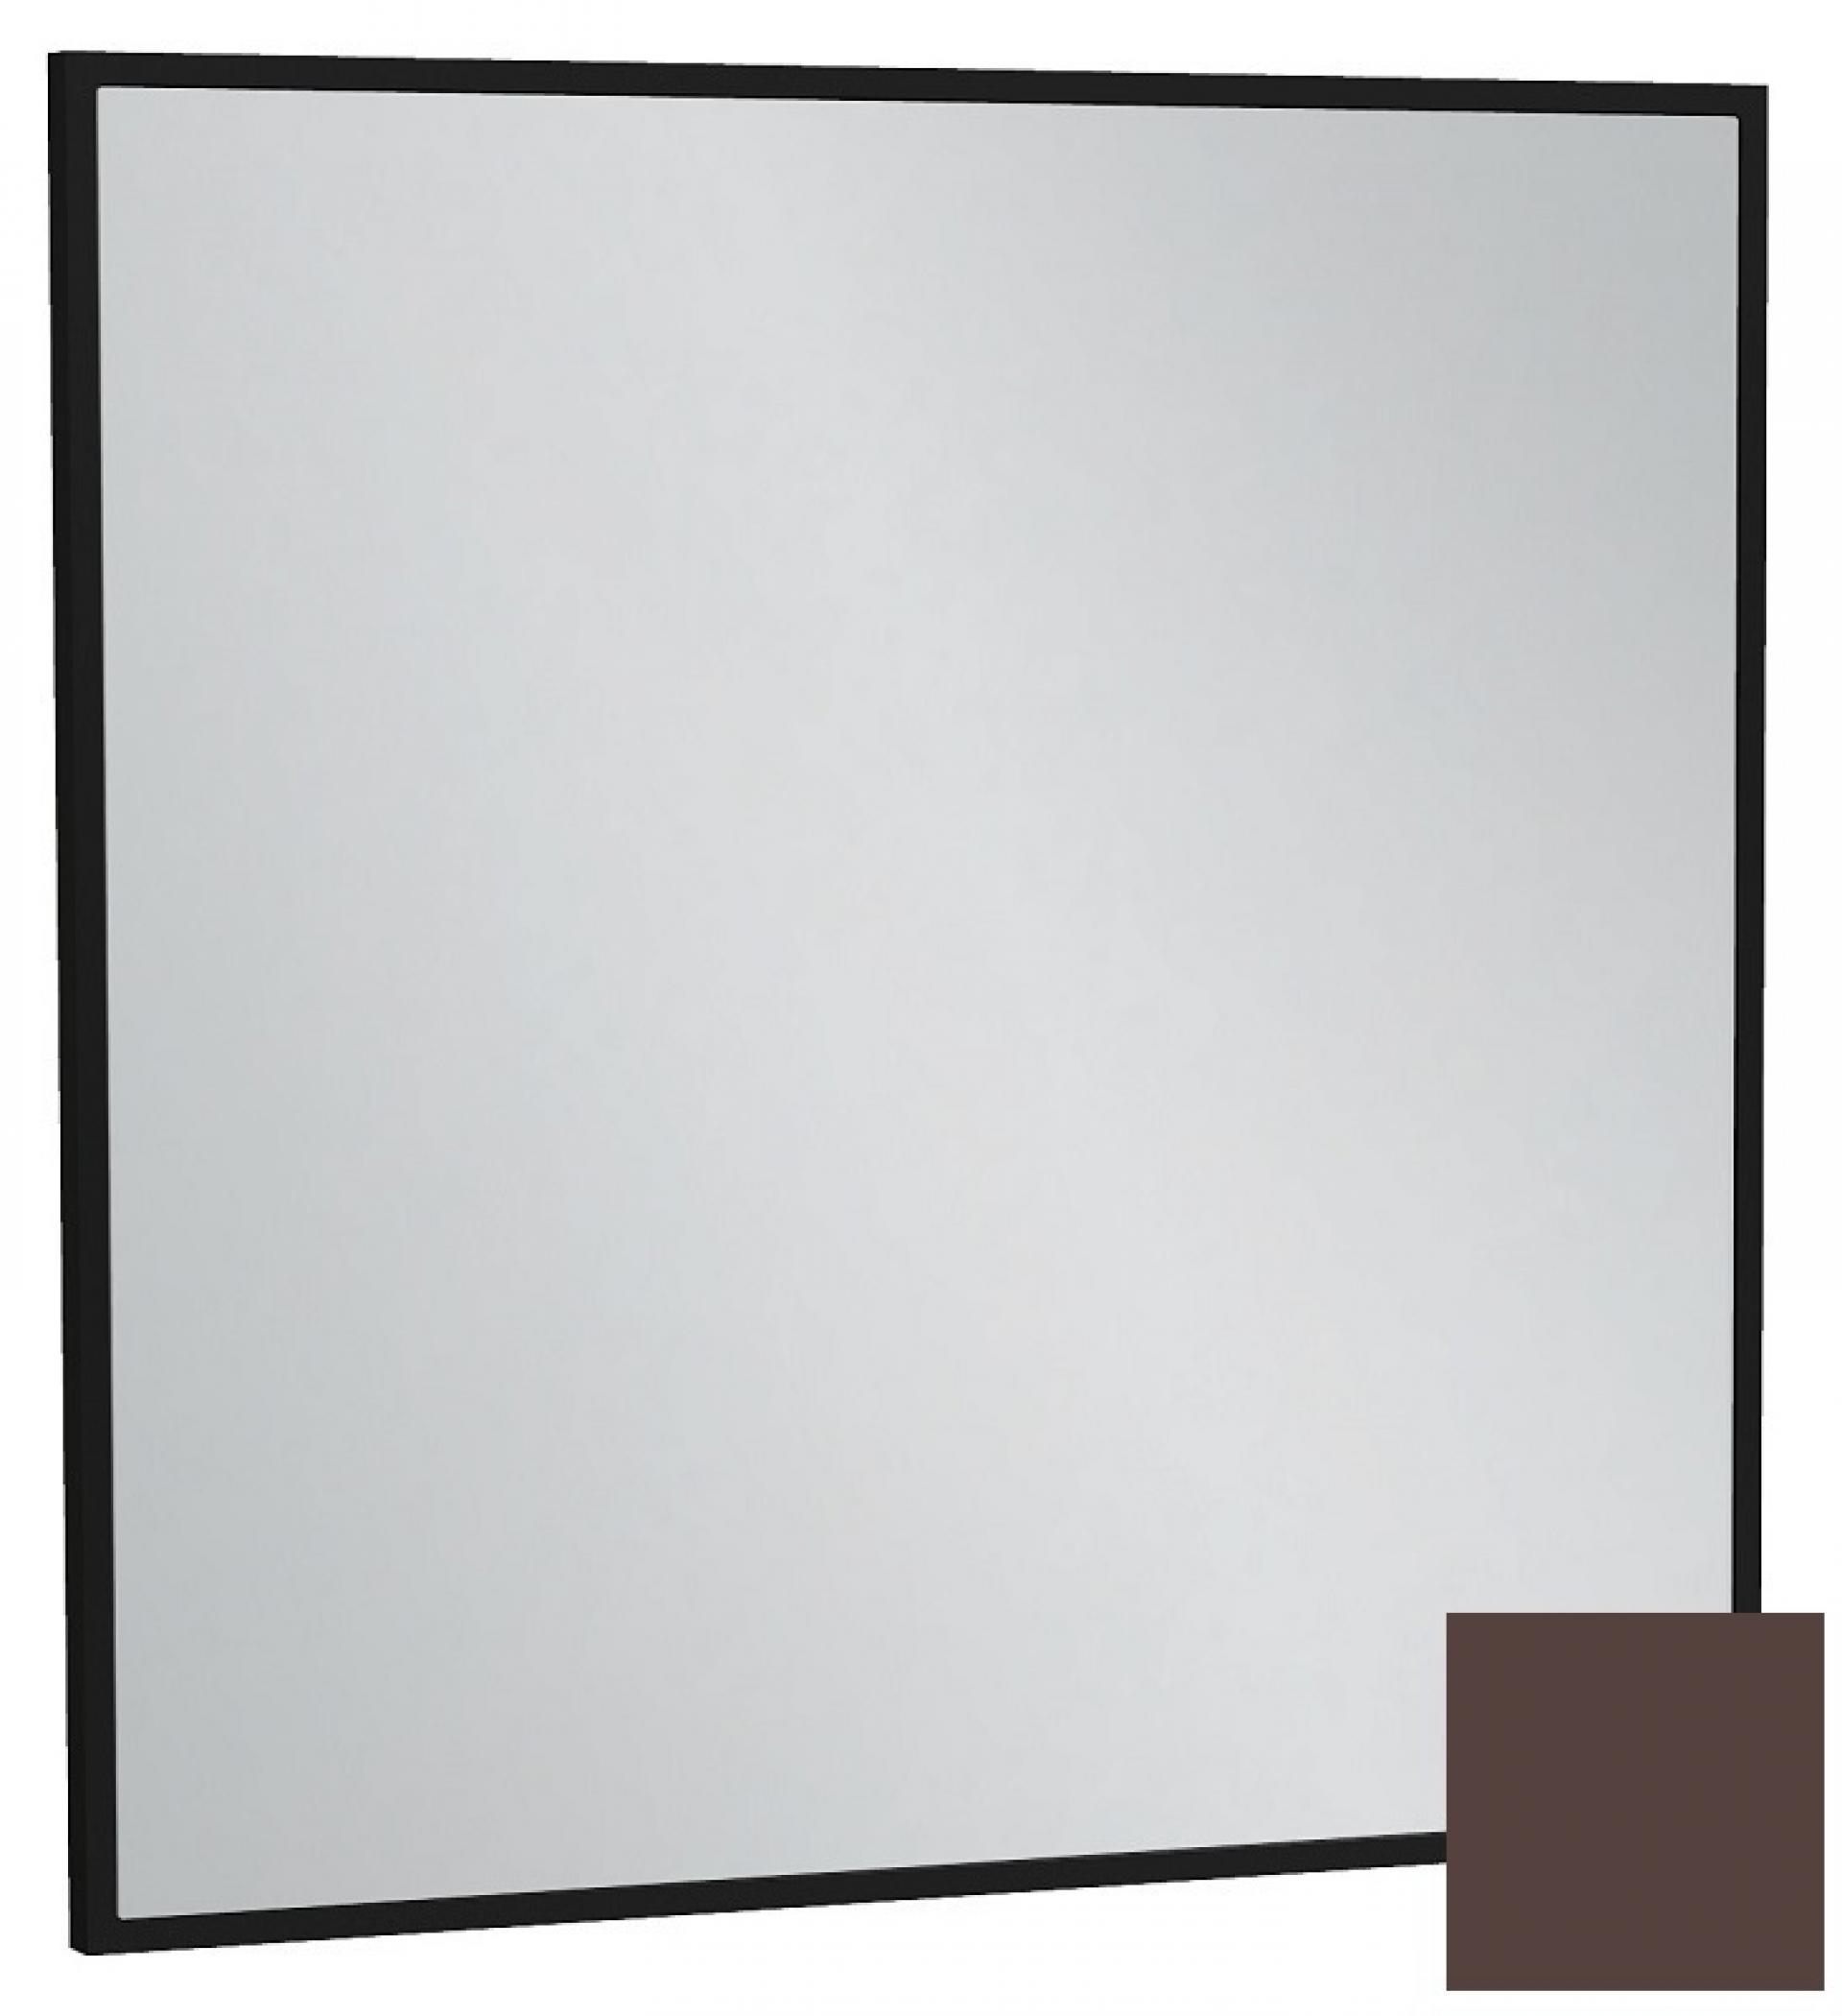 Зеркало 60 см Jacob Delafon Silhouette EB1423-F32, лакированная рама ледяной коричневый сатин